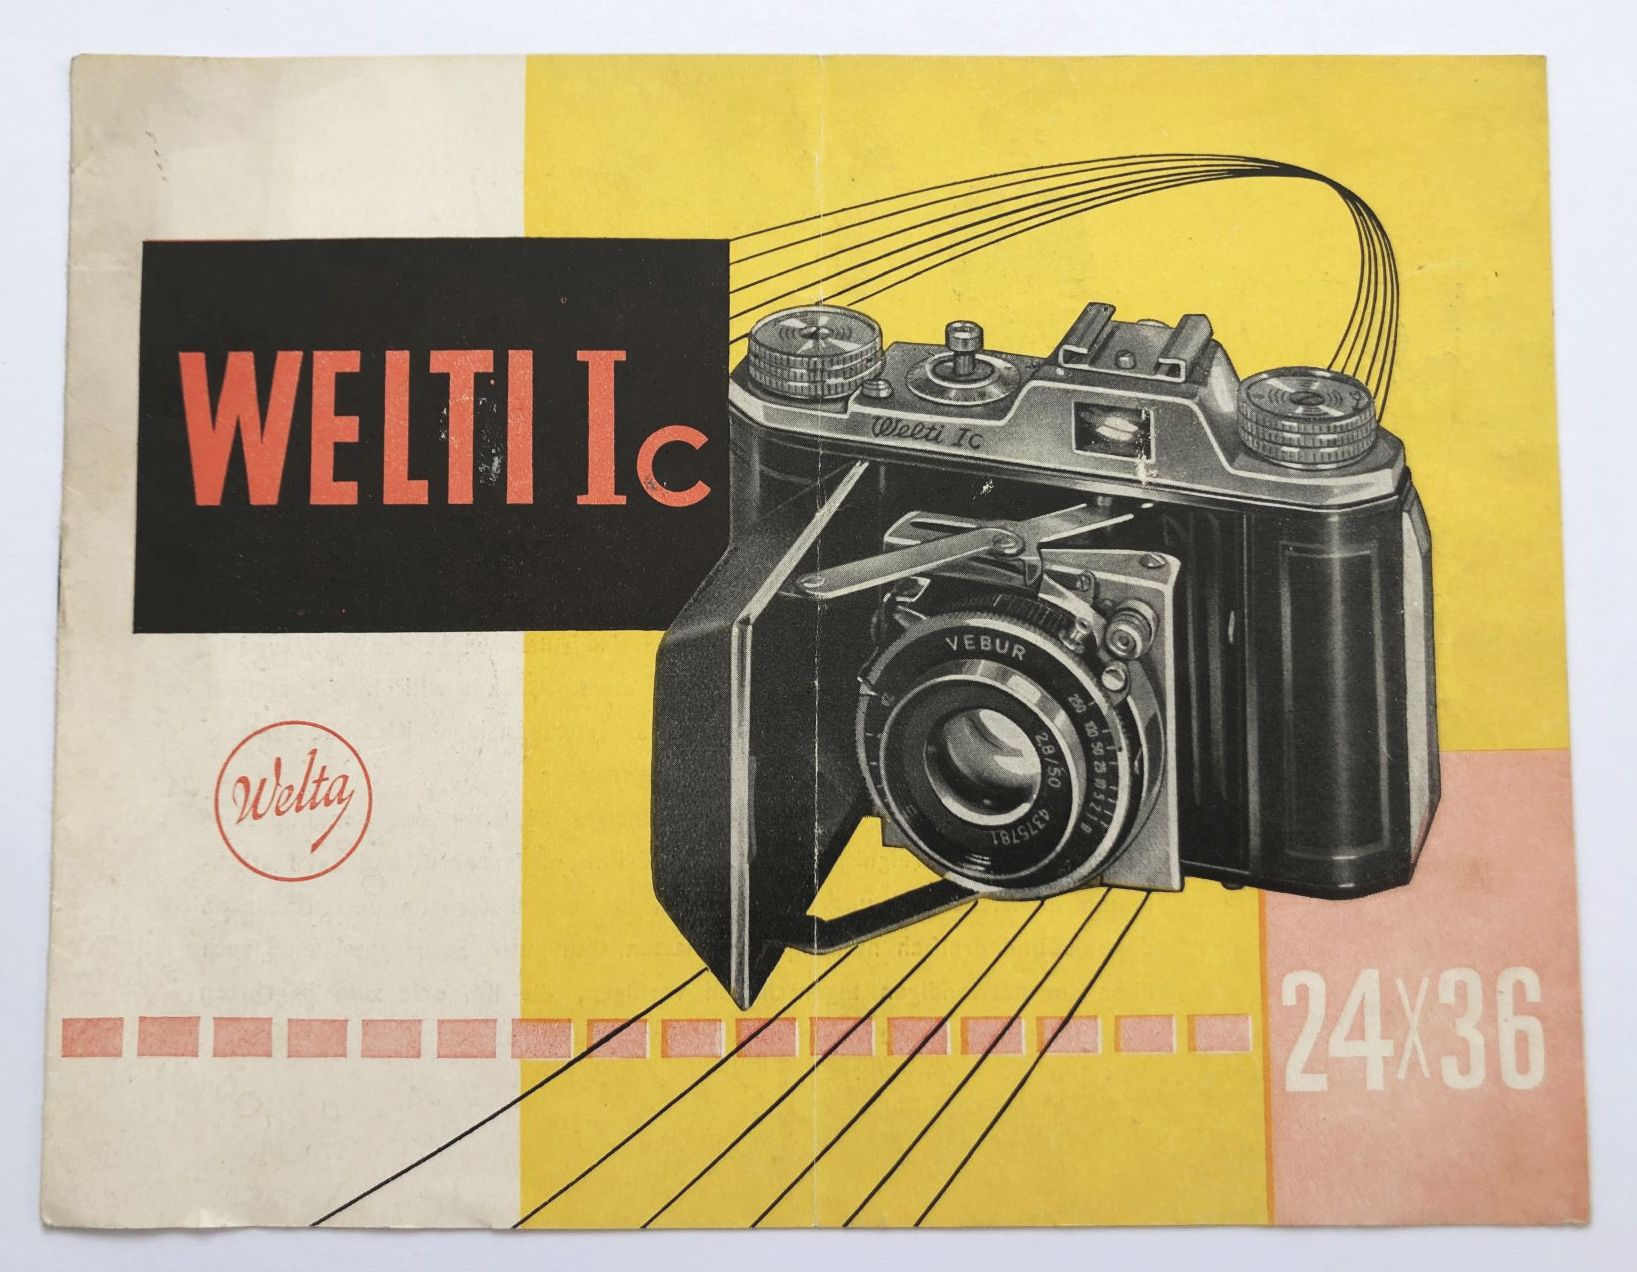 WELTI Ic 24 x 36 Welta Kamera Fotoapparat Prospekt DDR 1957